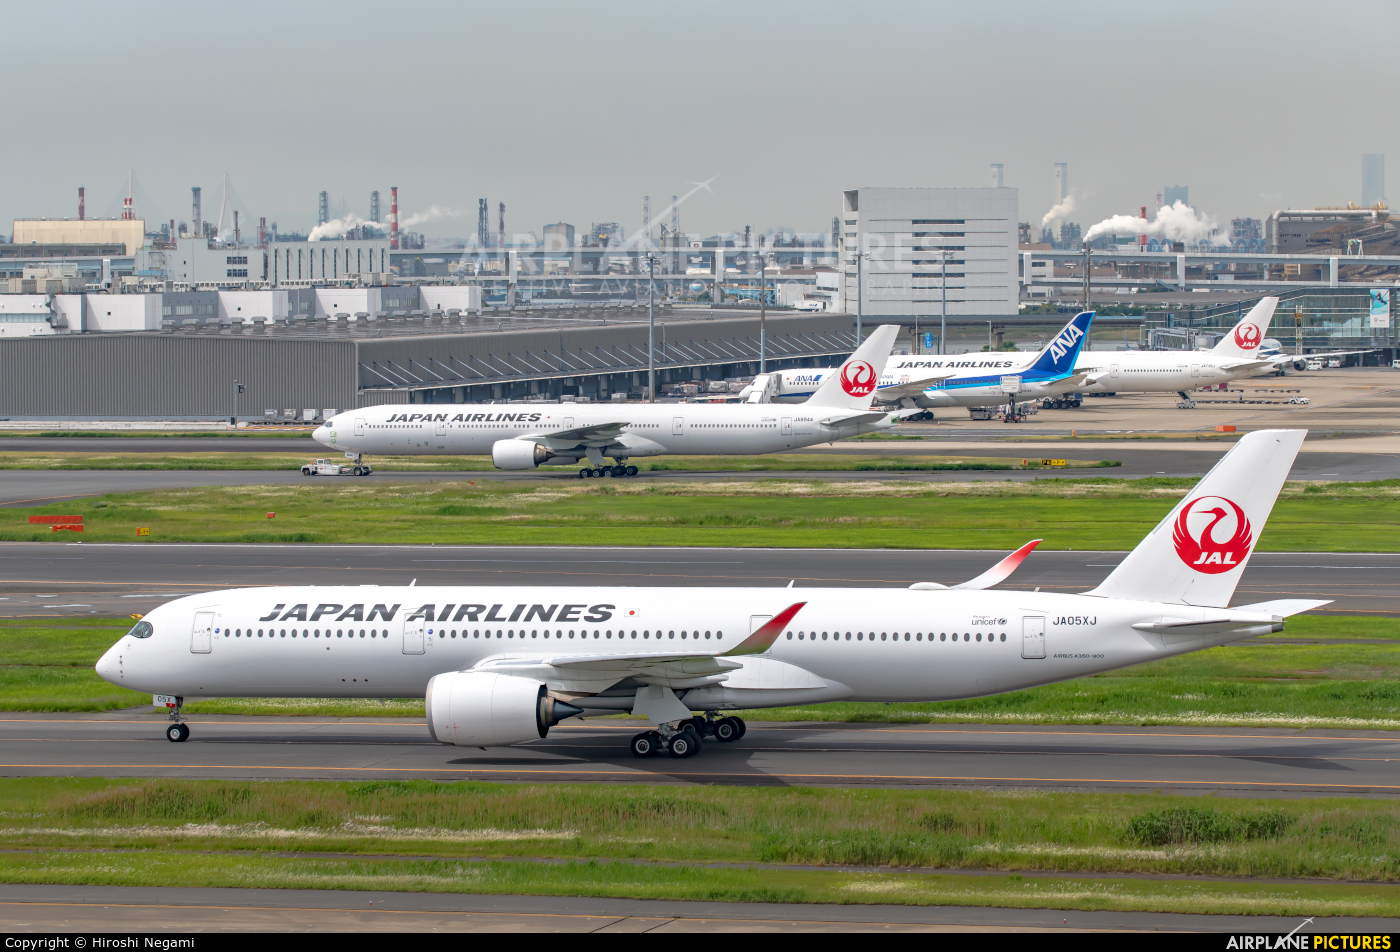 JAL - Japan Airlines JA05XJ aircraft at Tokyo - Haneda Intl